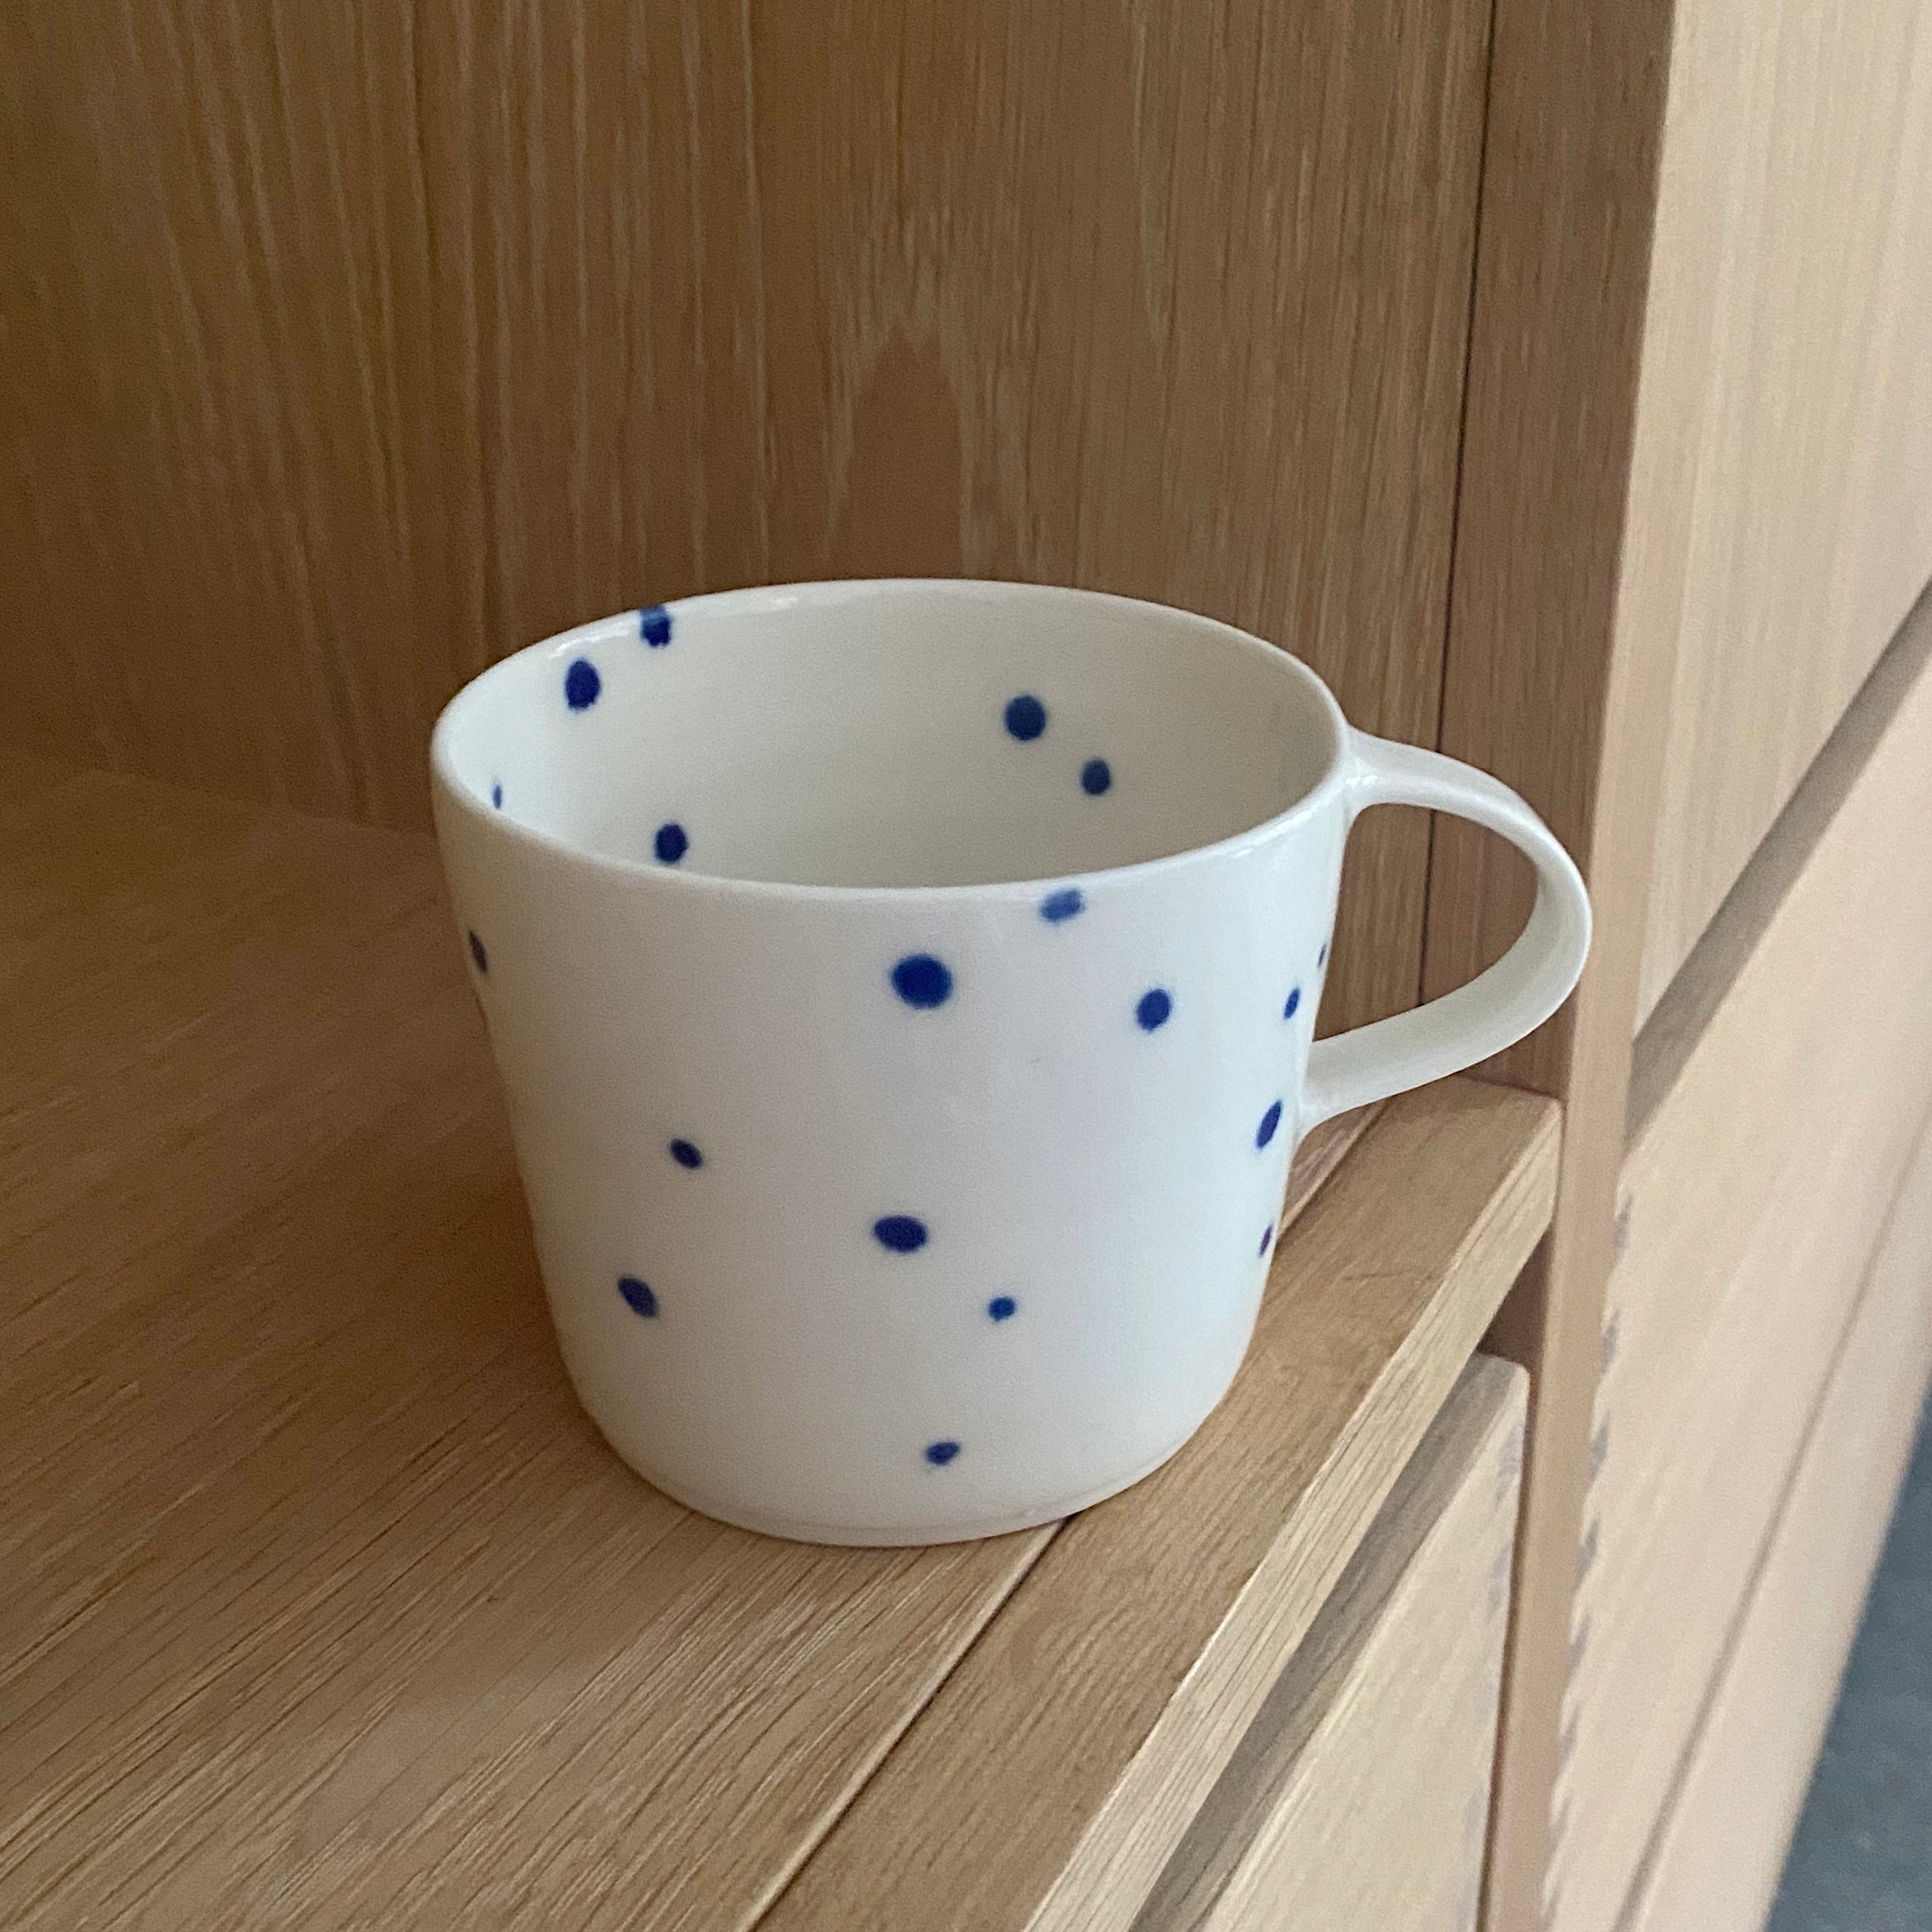 Ann-Louise Roman kaffekop med hank - blå små prikker